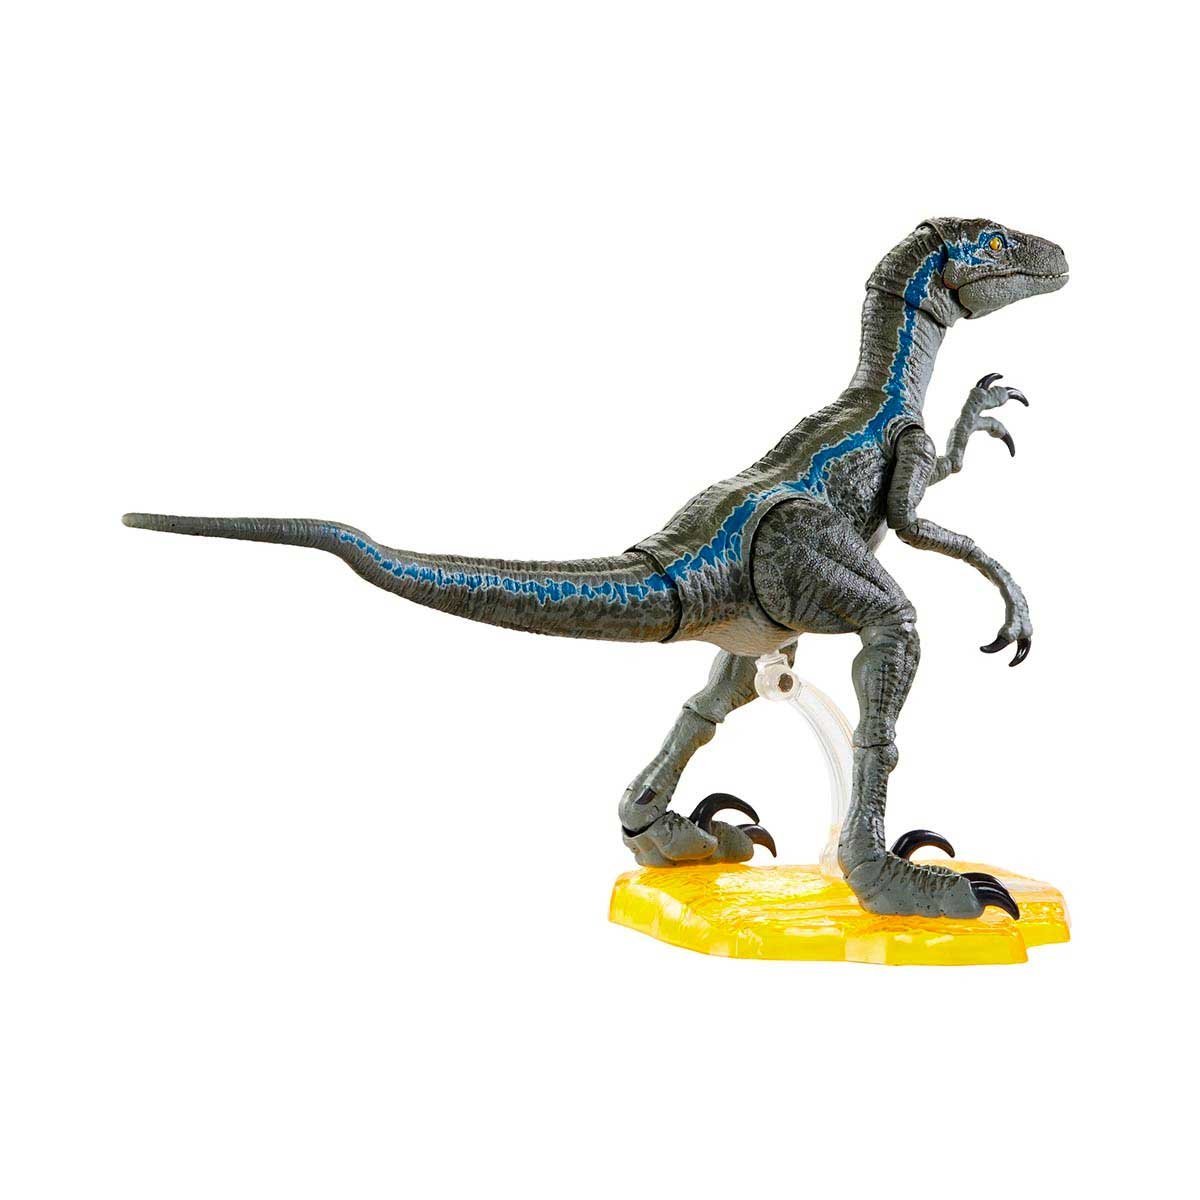 Dinosaurio de Juguete Jurassic World Blue Colección Deluxe